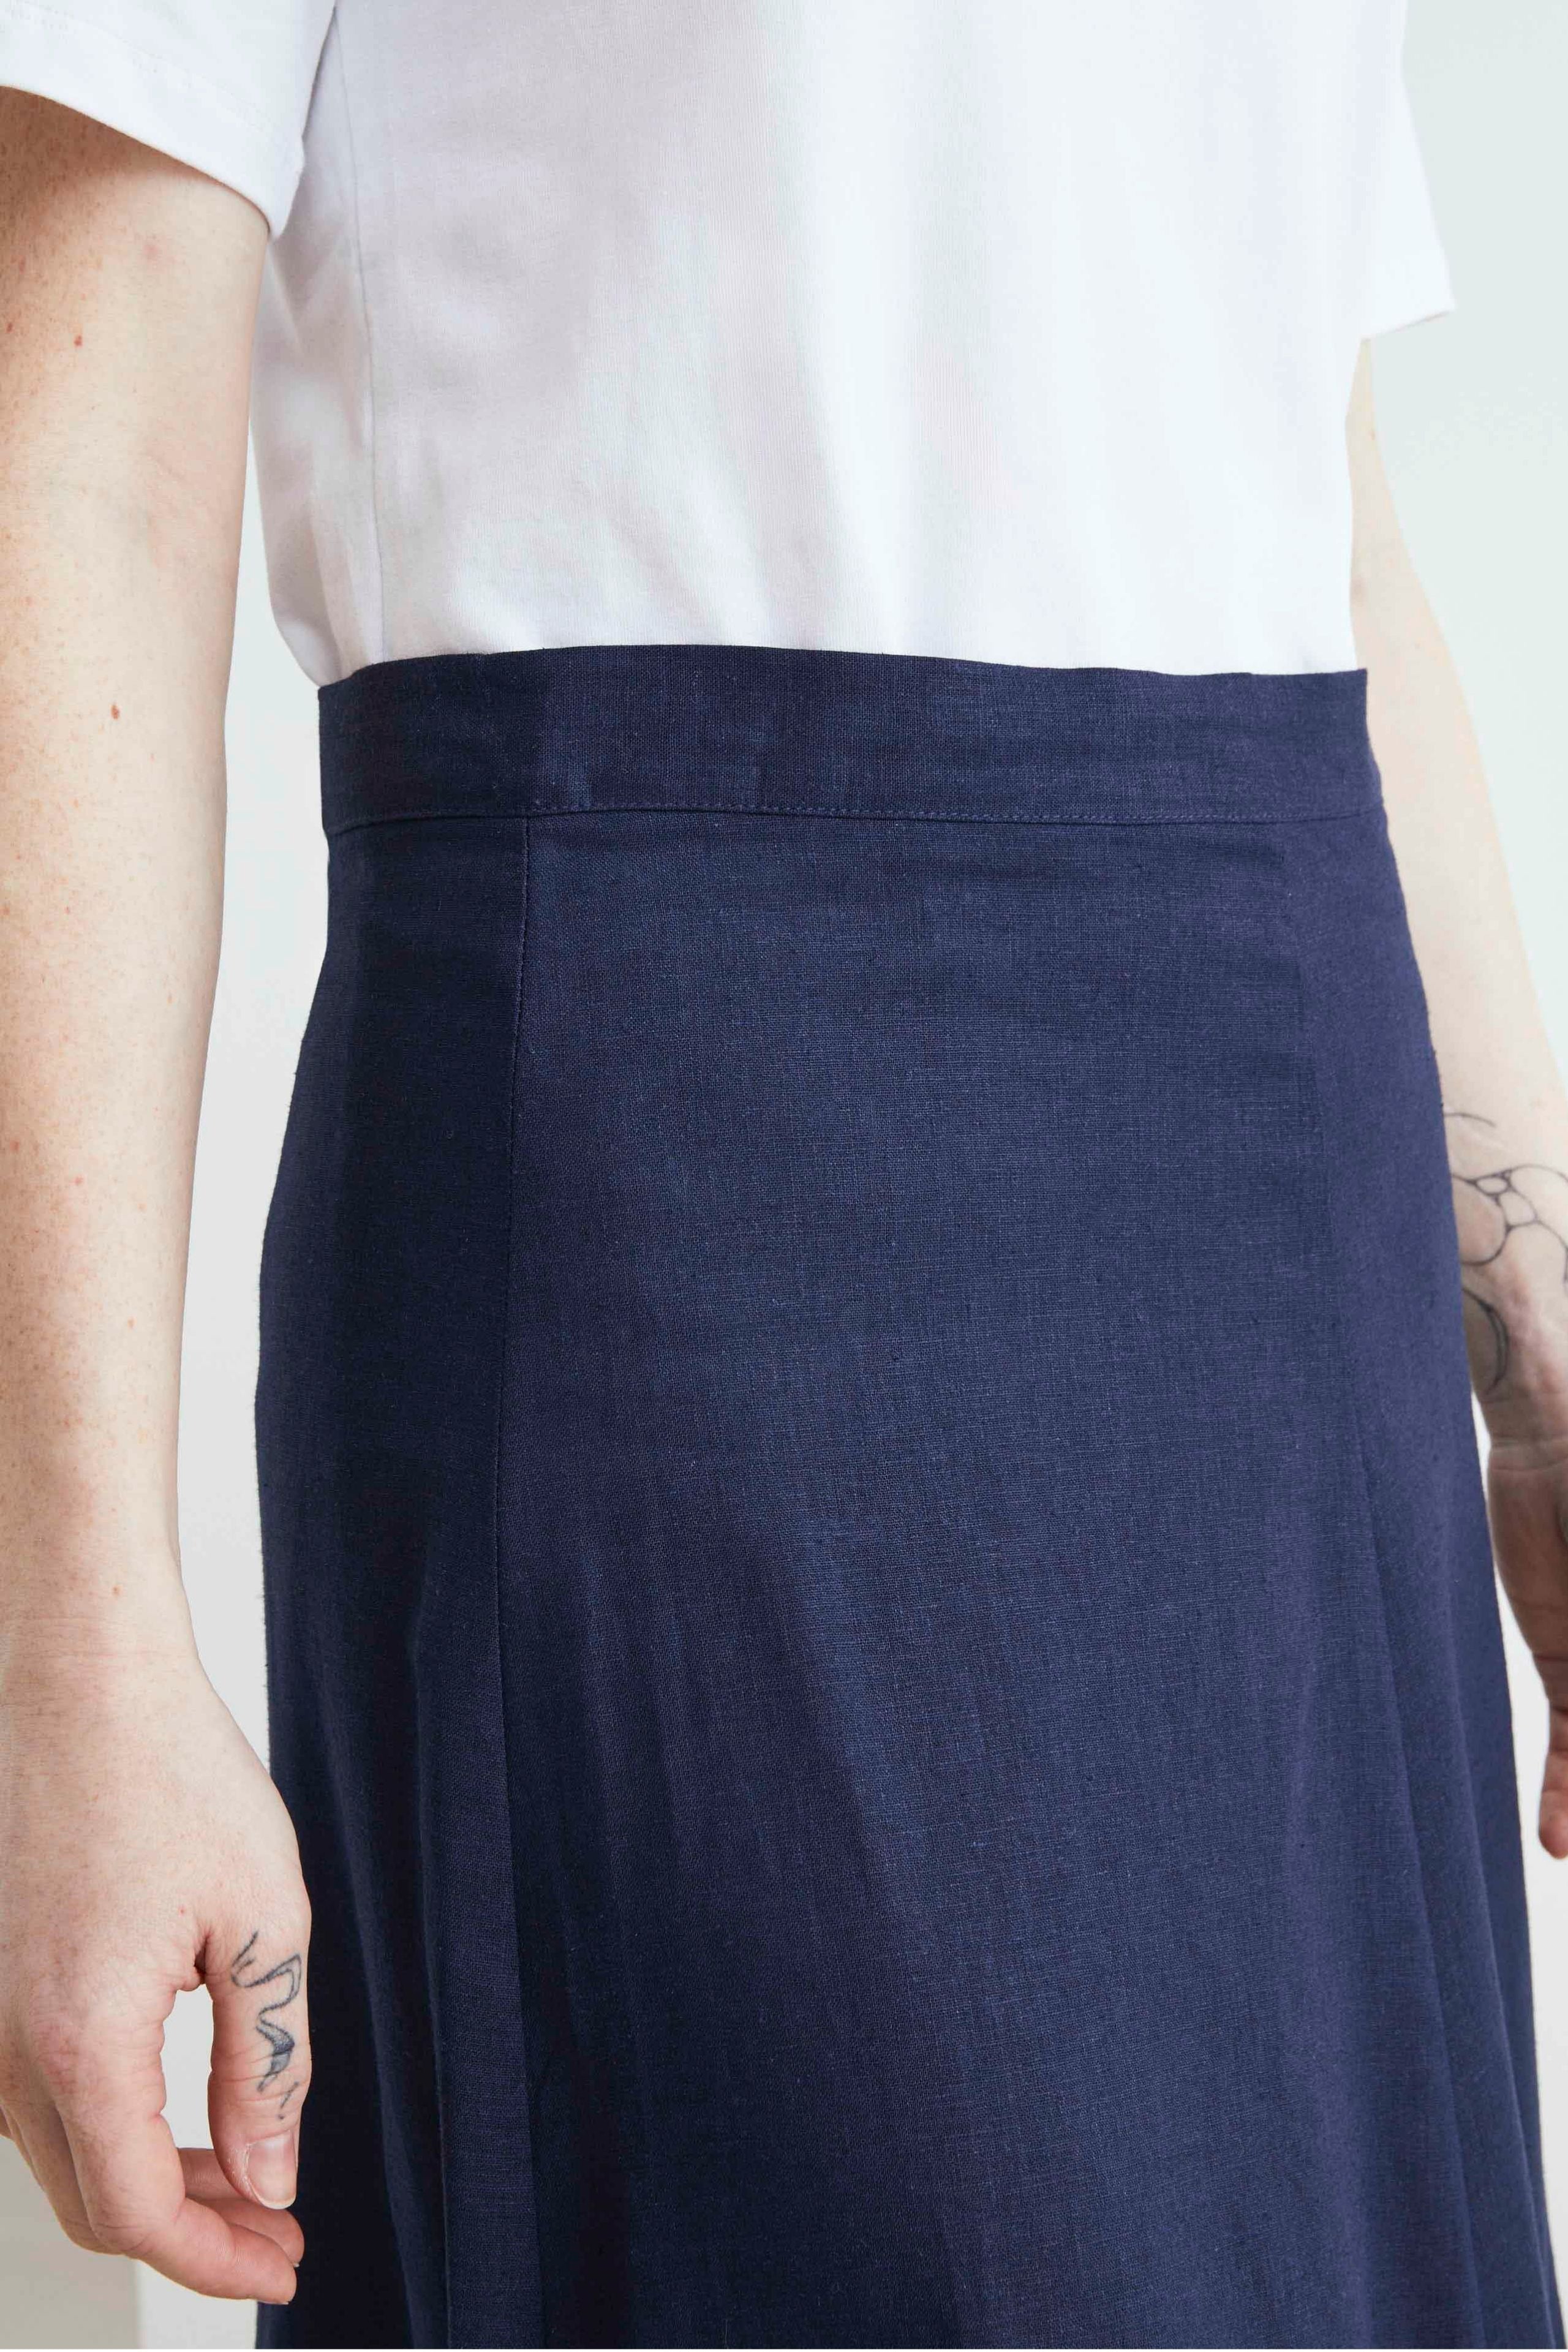 Linen midi skirt - Blue